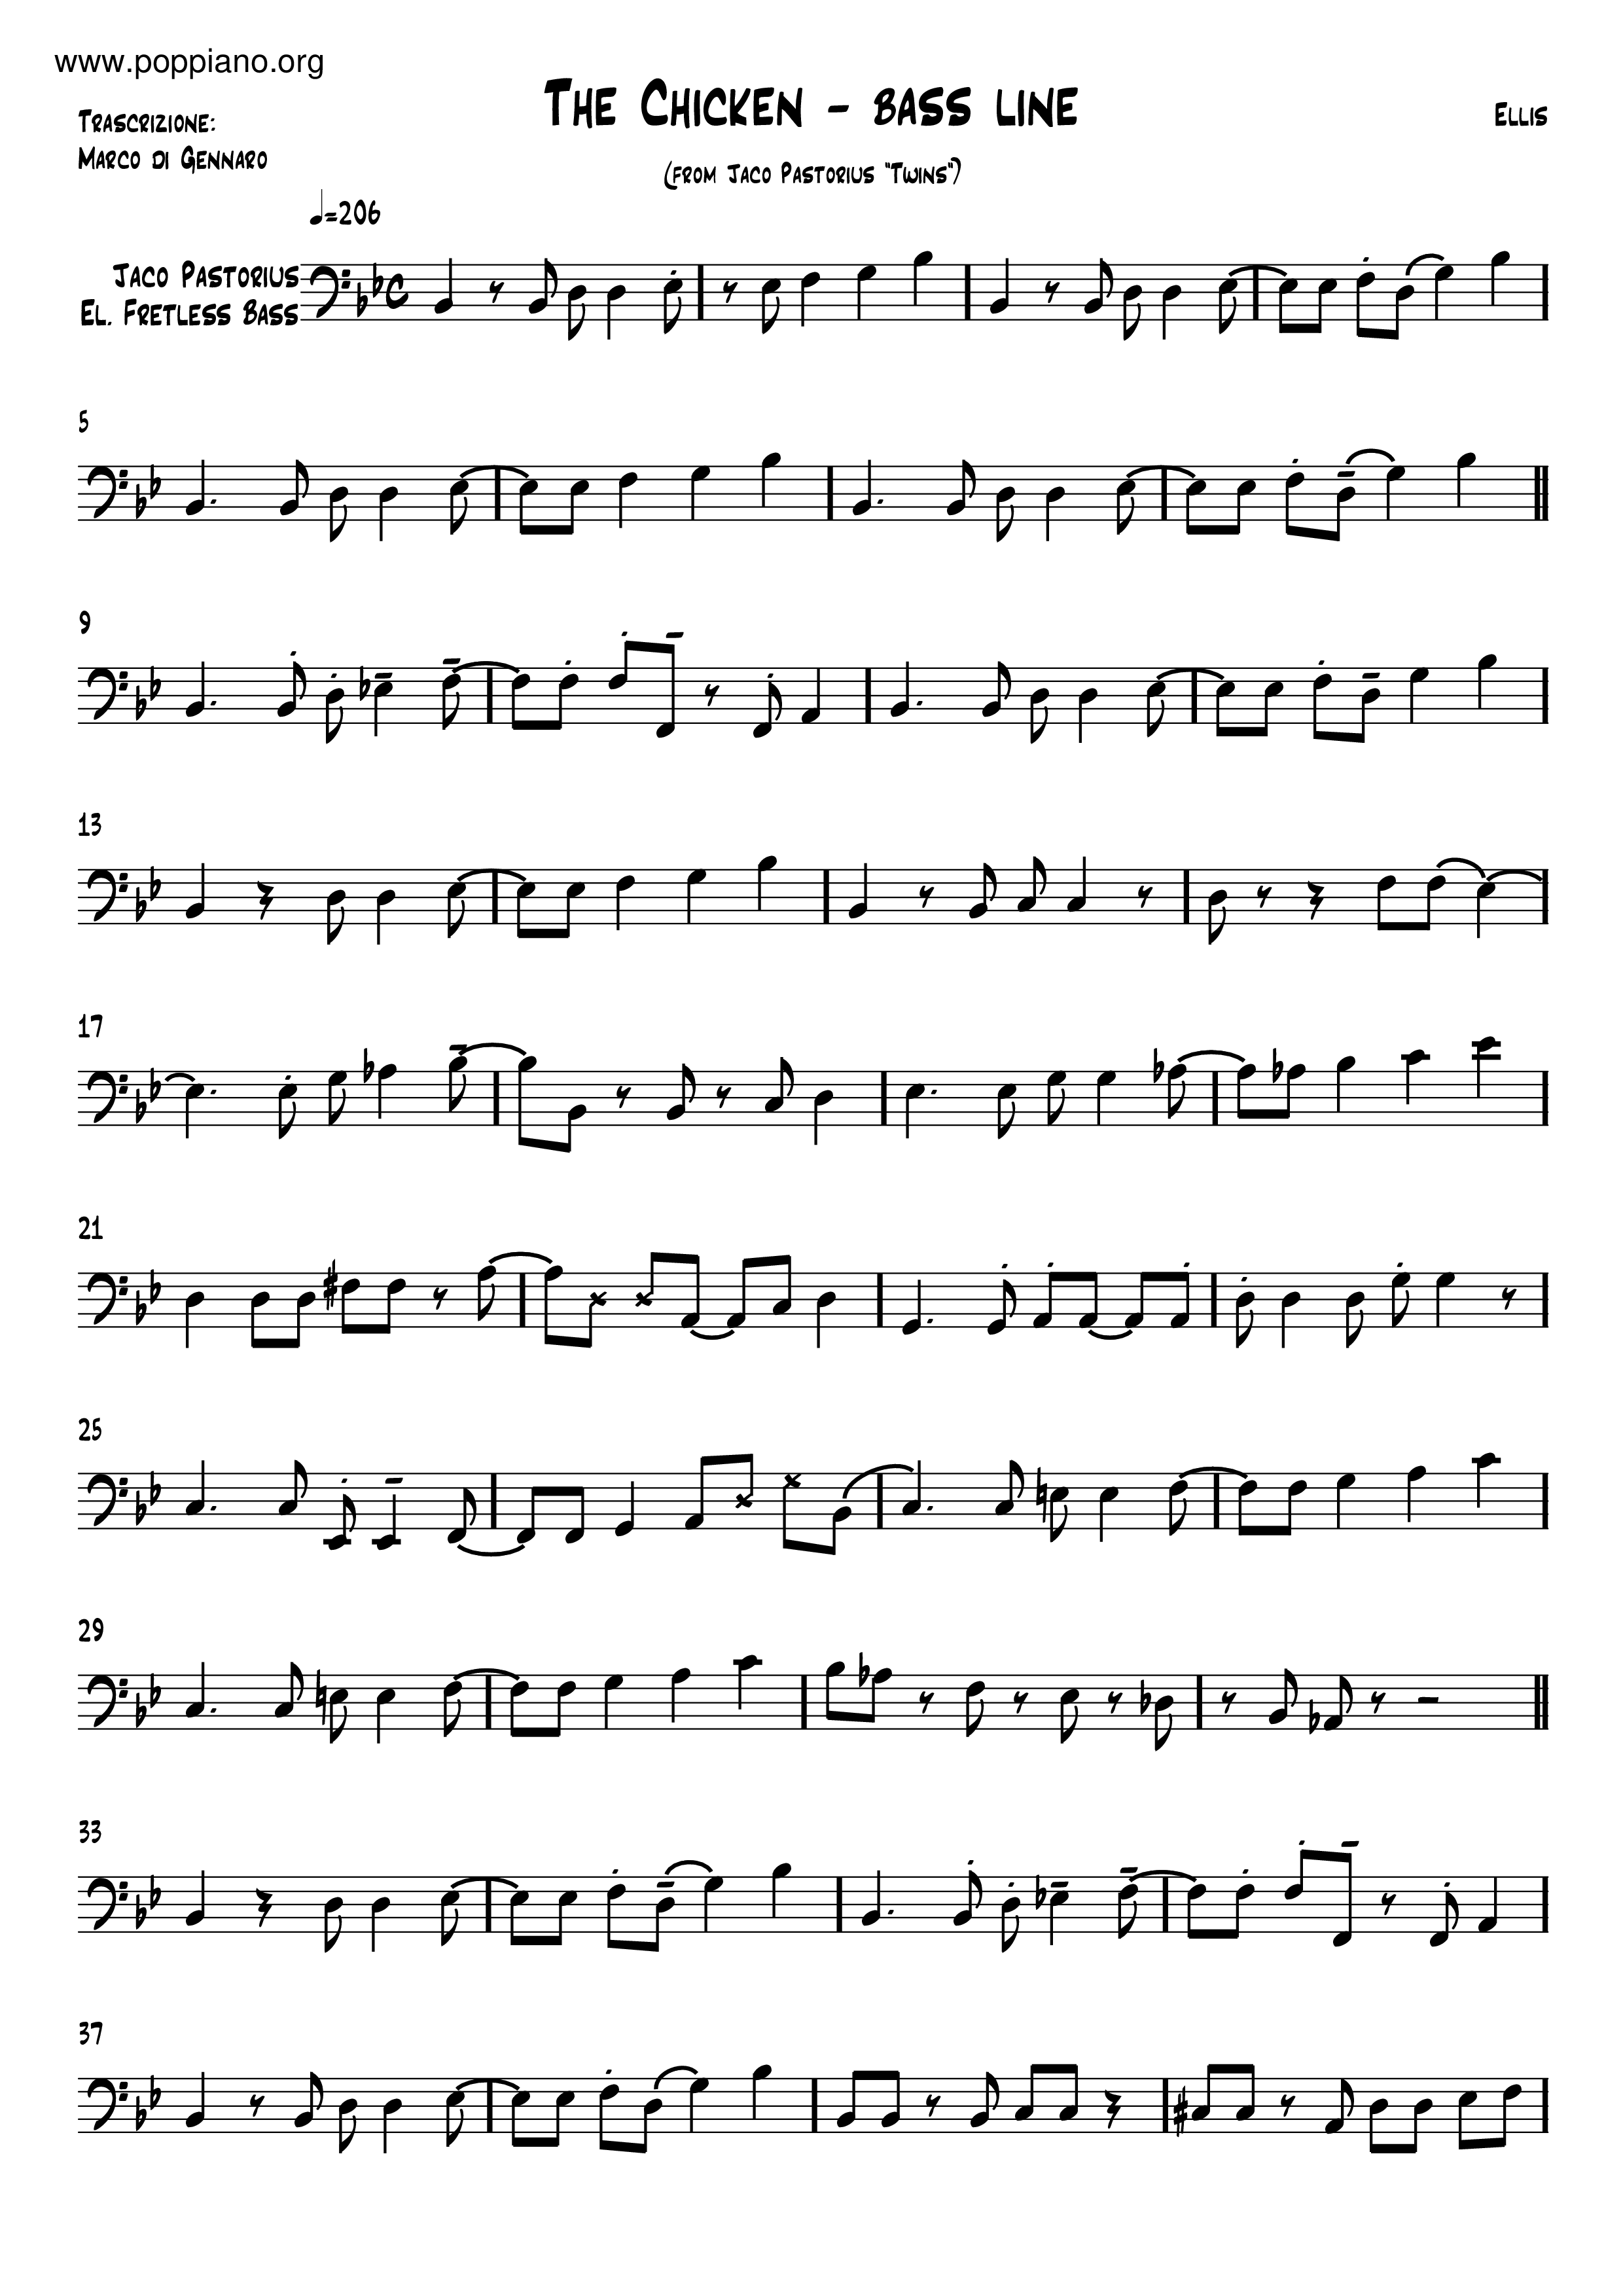 Jaco Pastorius-The Chicken Sheet Music pdf, - Free Score Download ☆